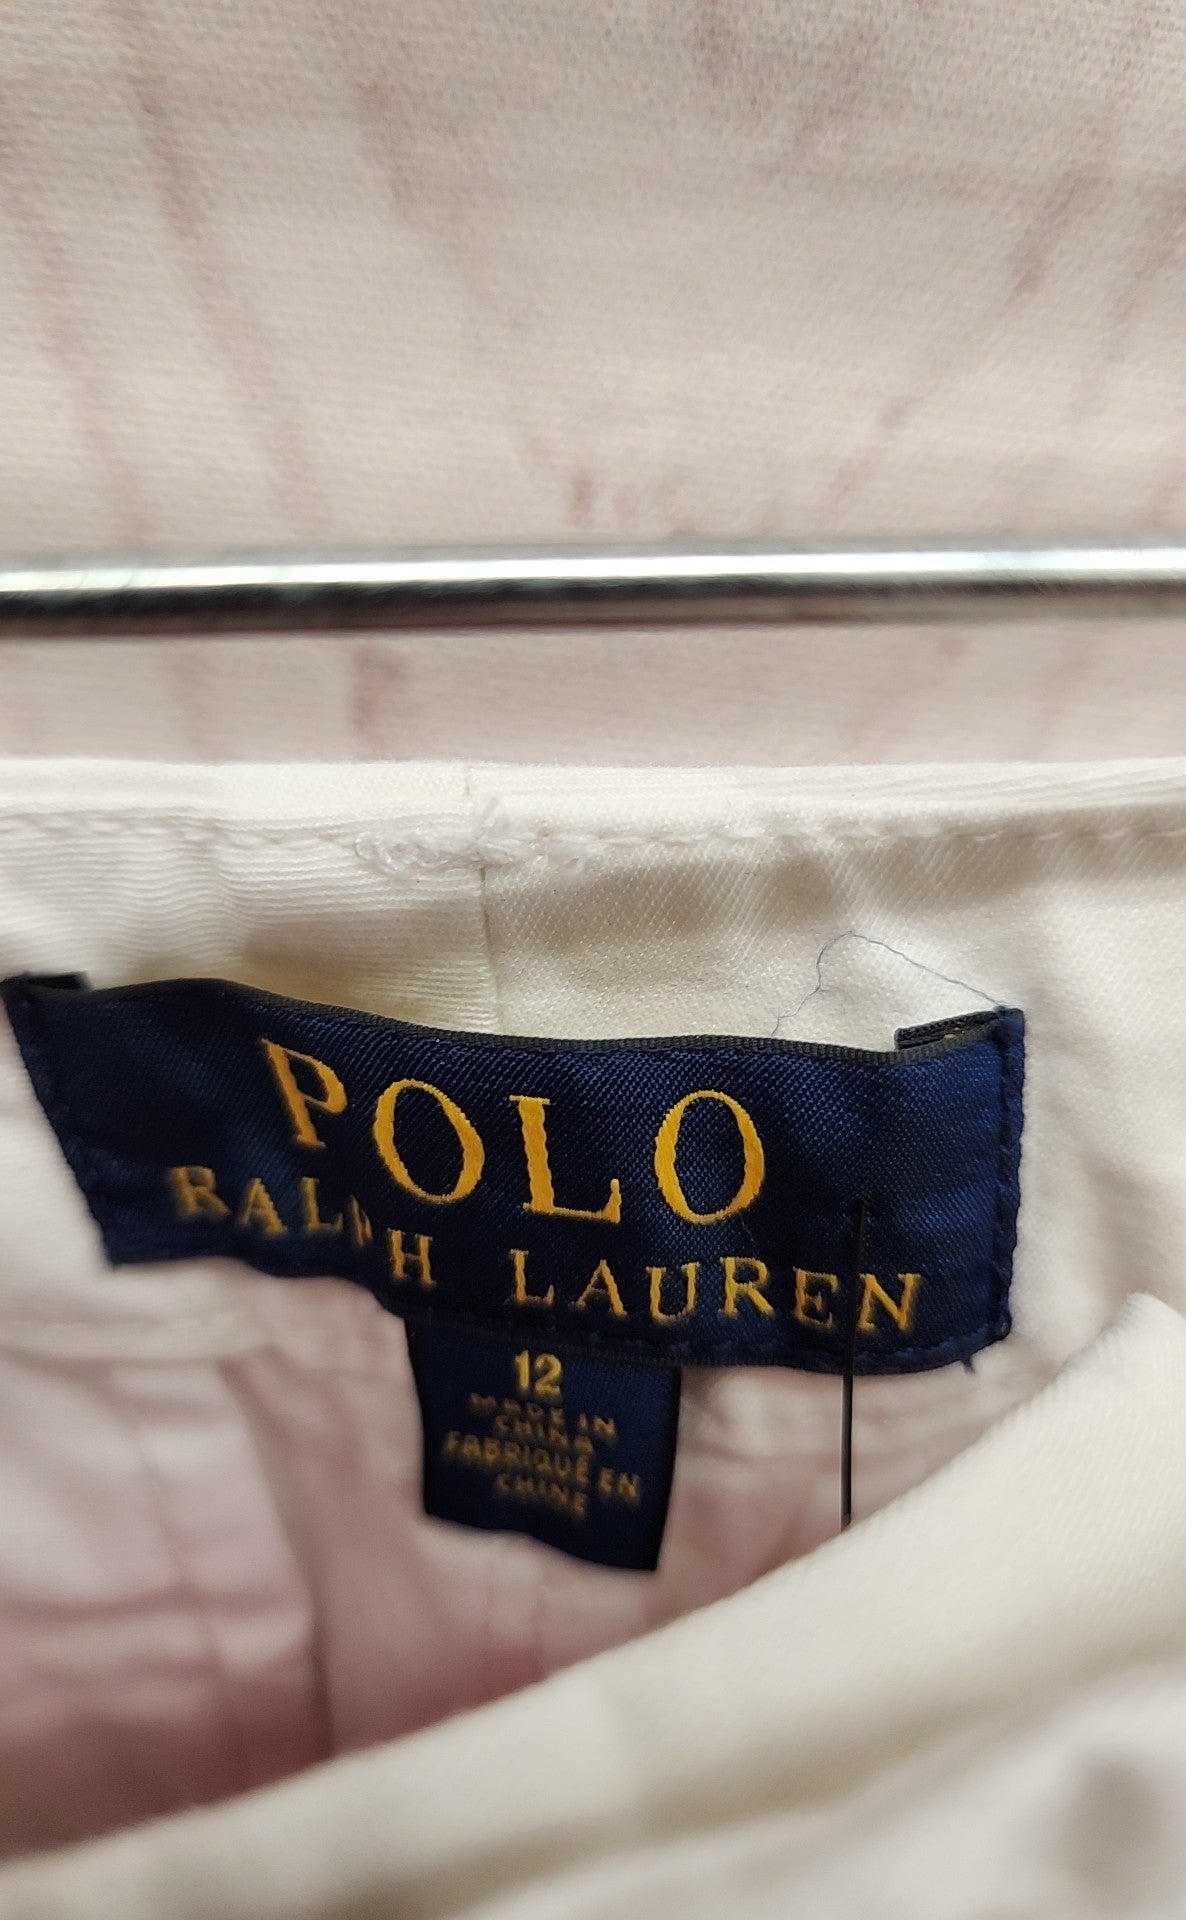 Polo by Ralph Lauren Boy's Size 12 White Pants